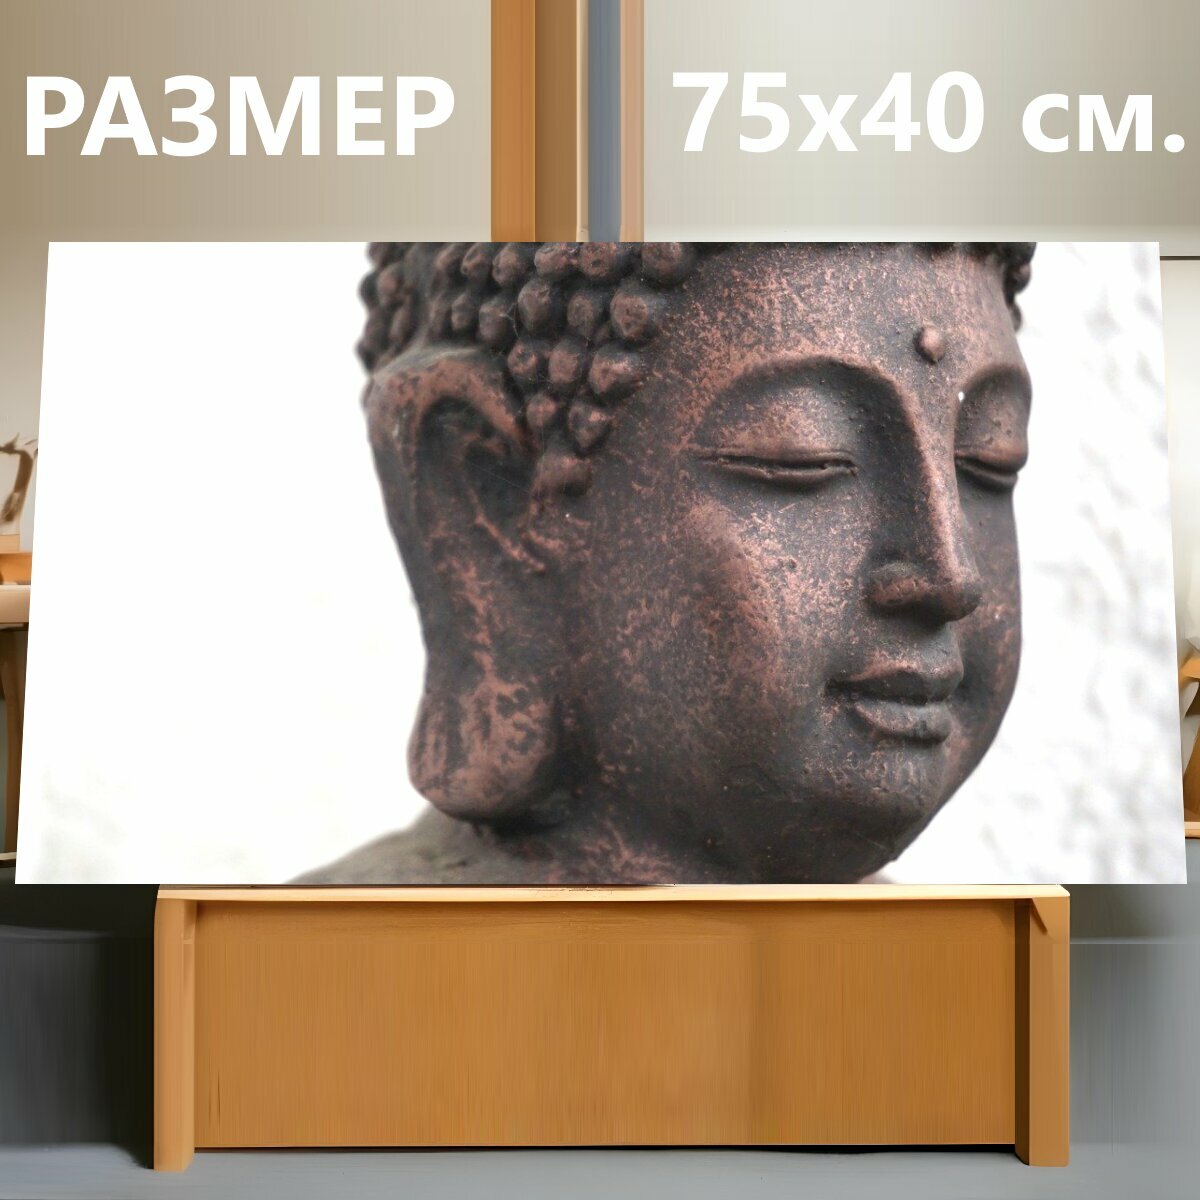 Картина на холсте "Будда, статуя, скульптура" на подрамнике 75х40 см. для интерьера